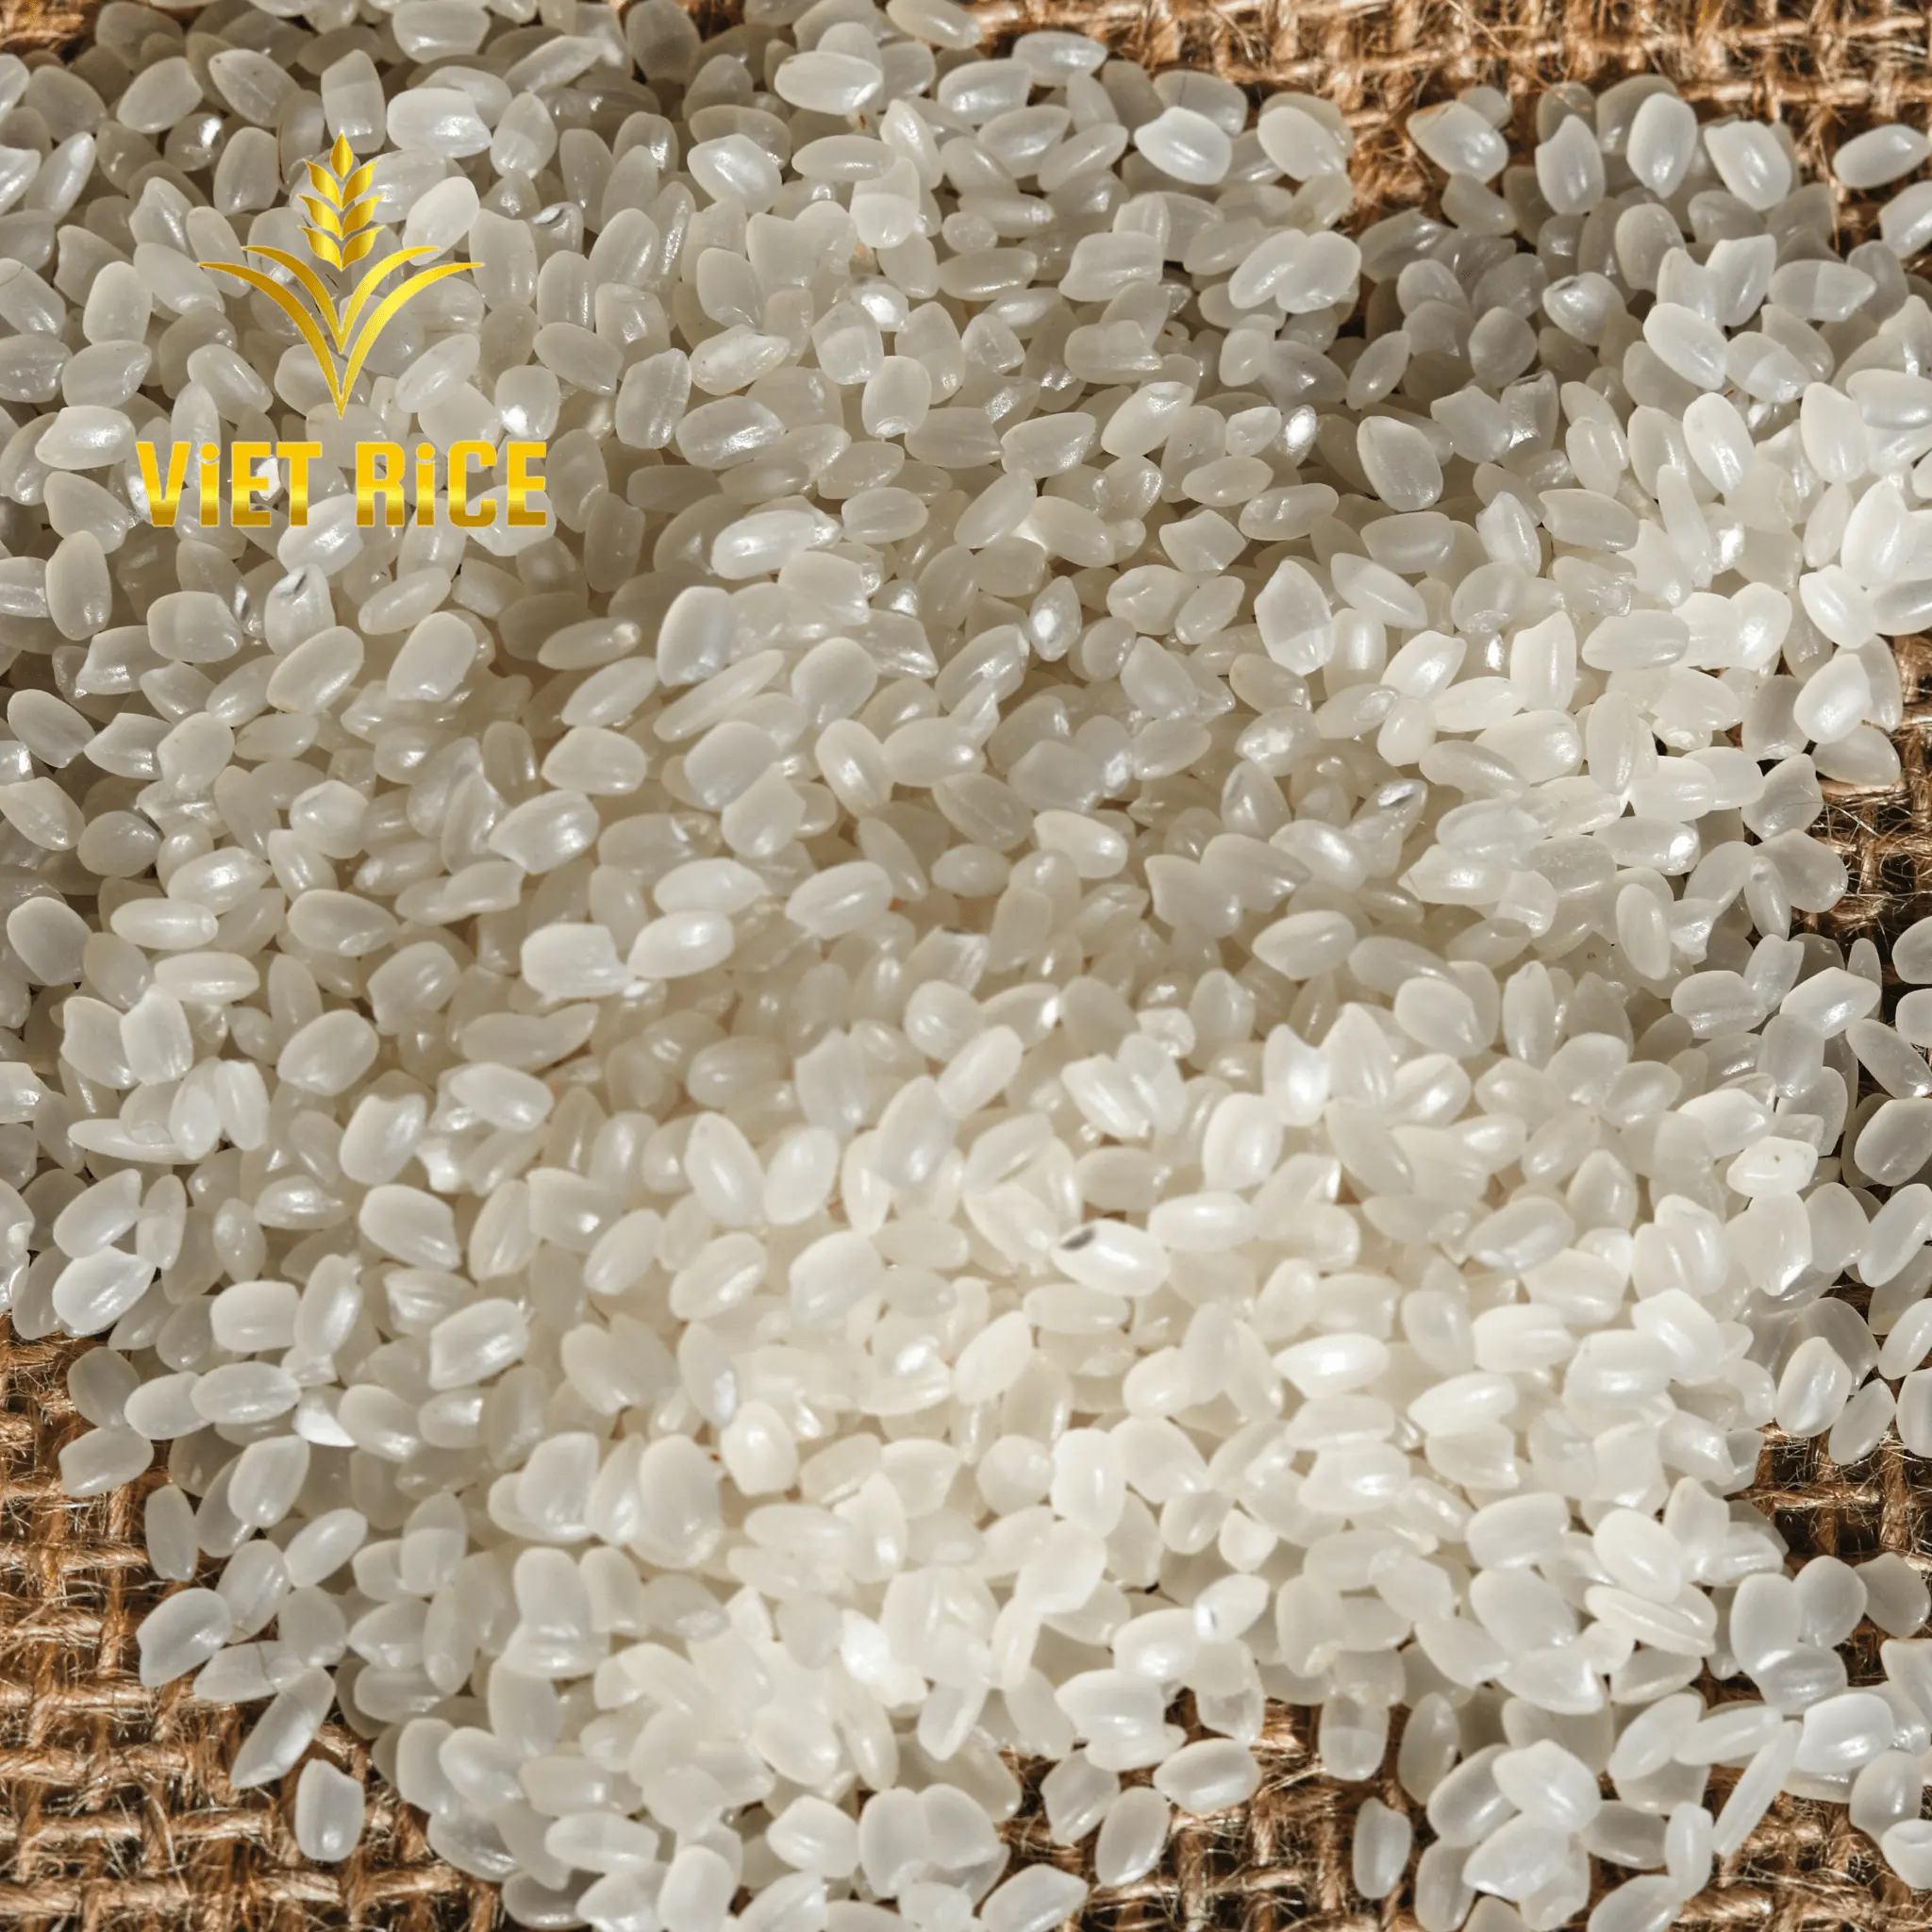 Japonica 5% beras putih gandum pendek rusak pilihan terbaik untuk membuat sushi yang disediakan oleh VIETRICE atas produsen di VIETNAM